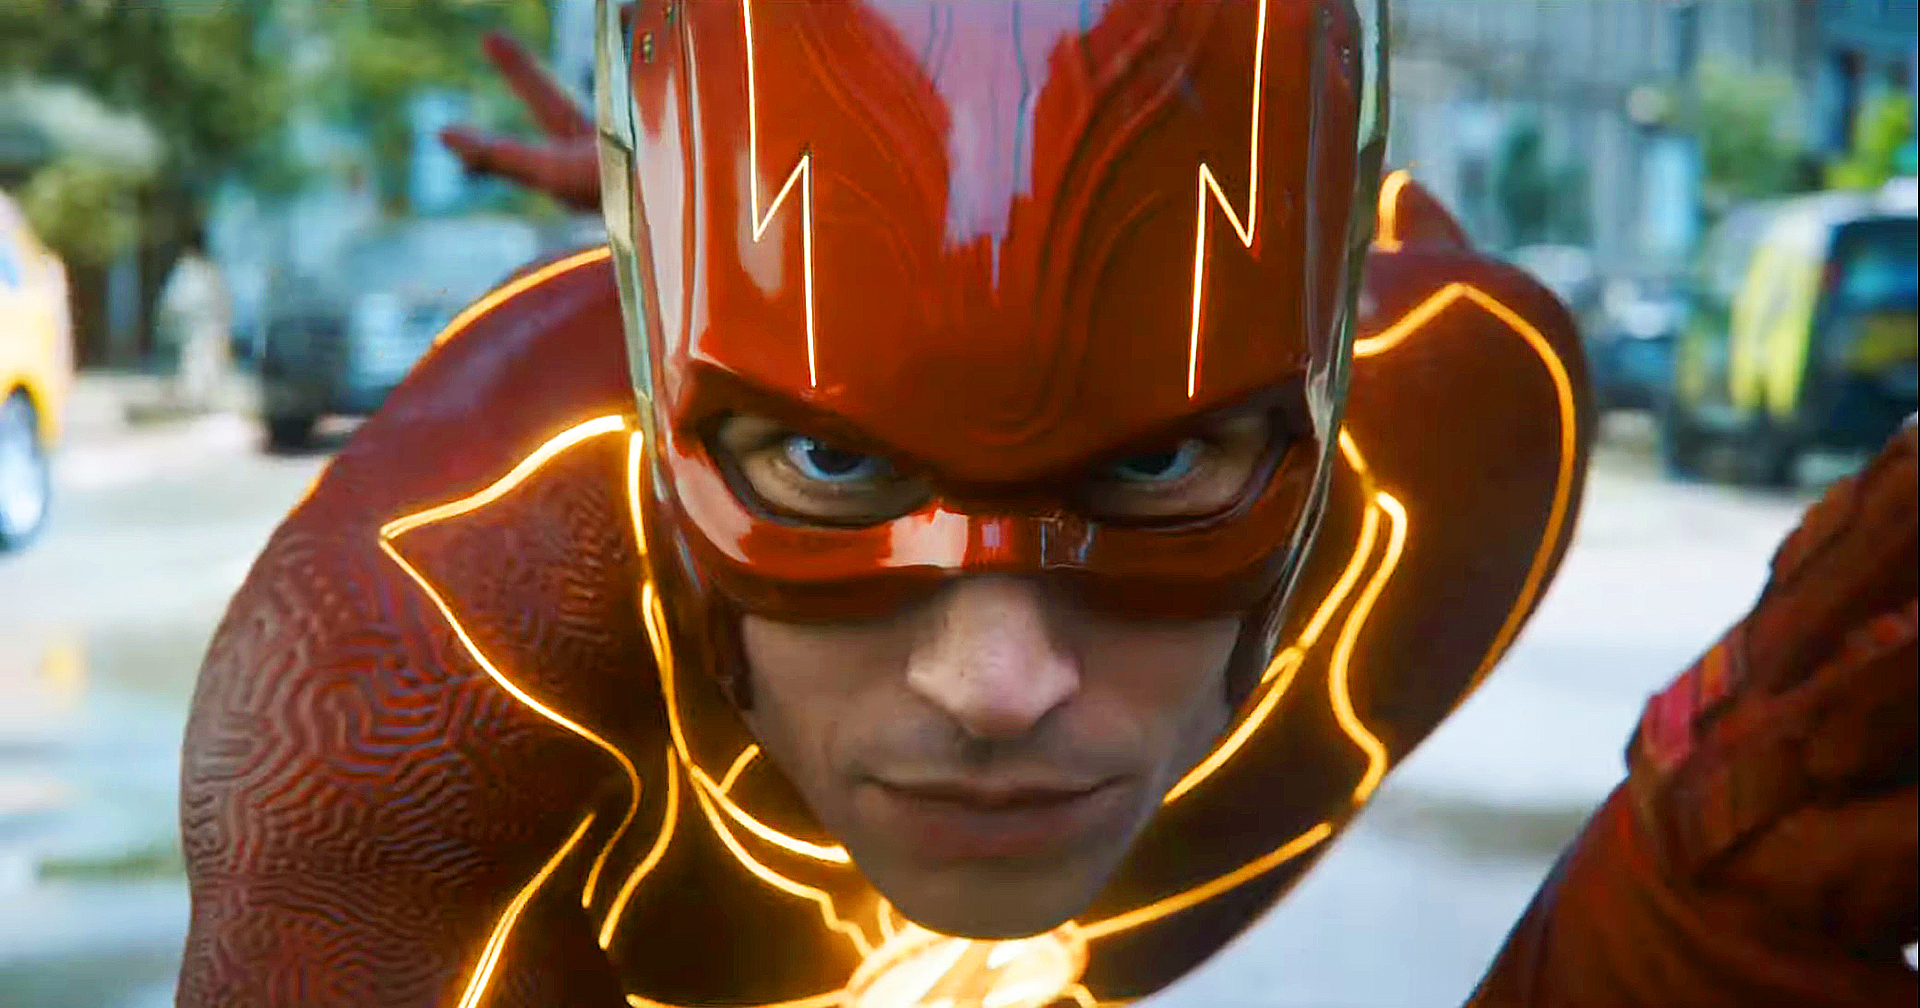 ‘The Flash’ ได้คะแนนรอบทดลองฉายสูงสุดนับตั้งแต่ไตรภาค ‘The Dark Knight’ ของ Christopher Nolan